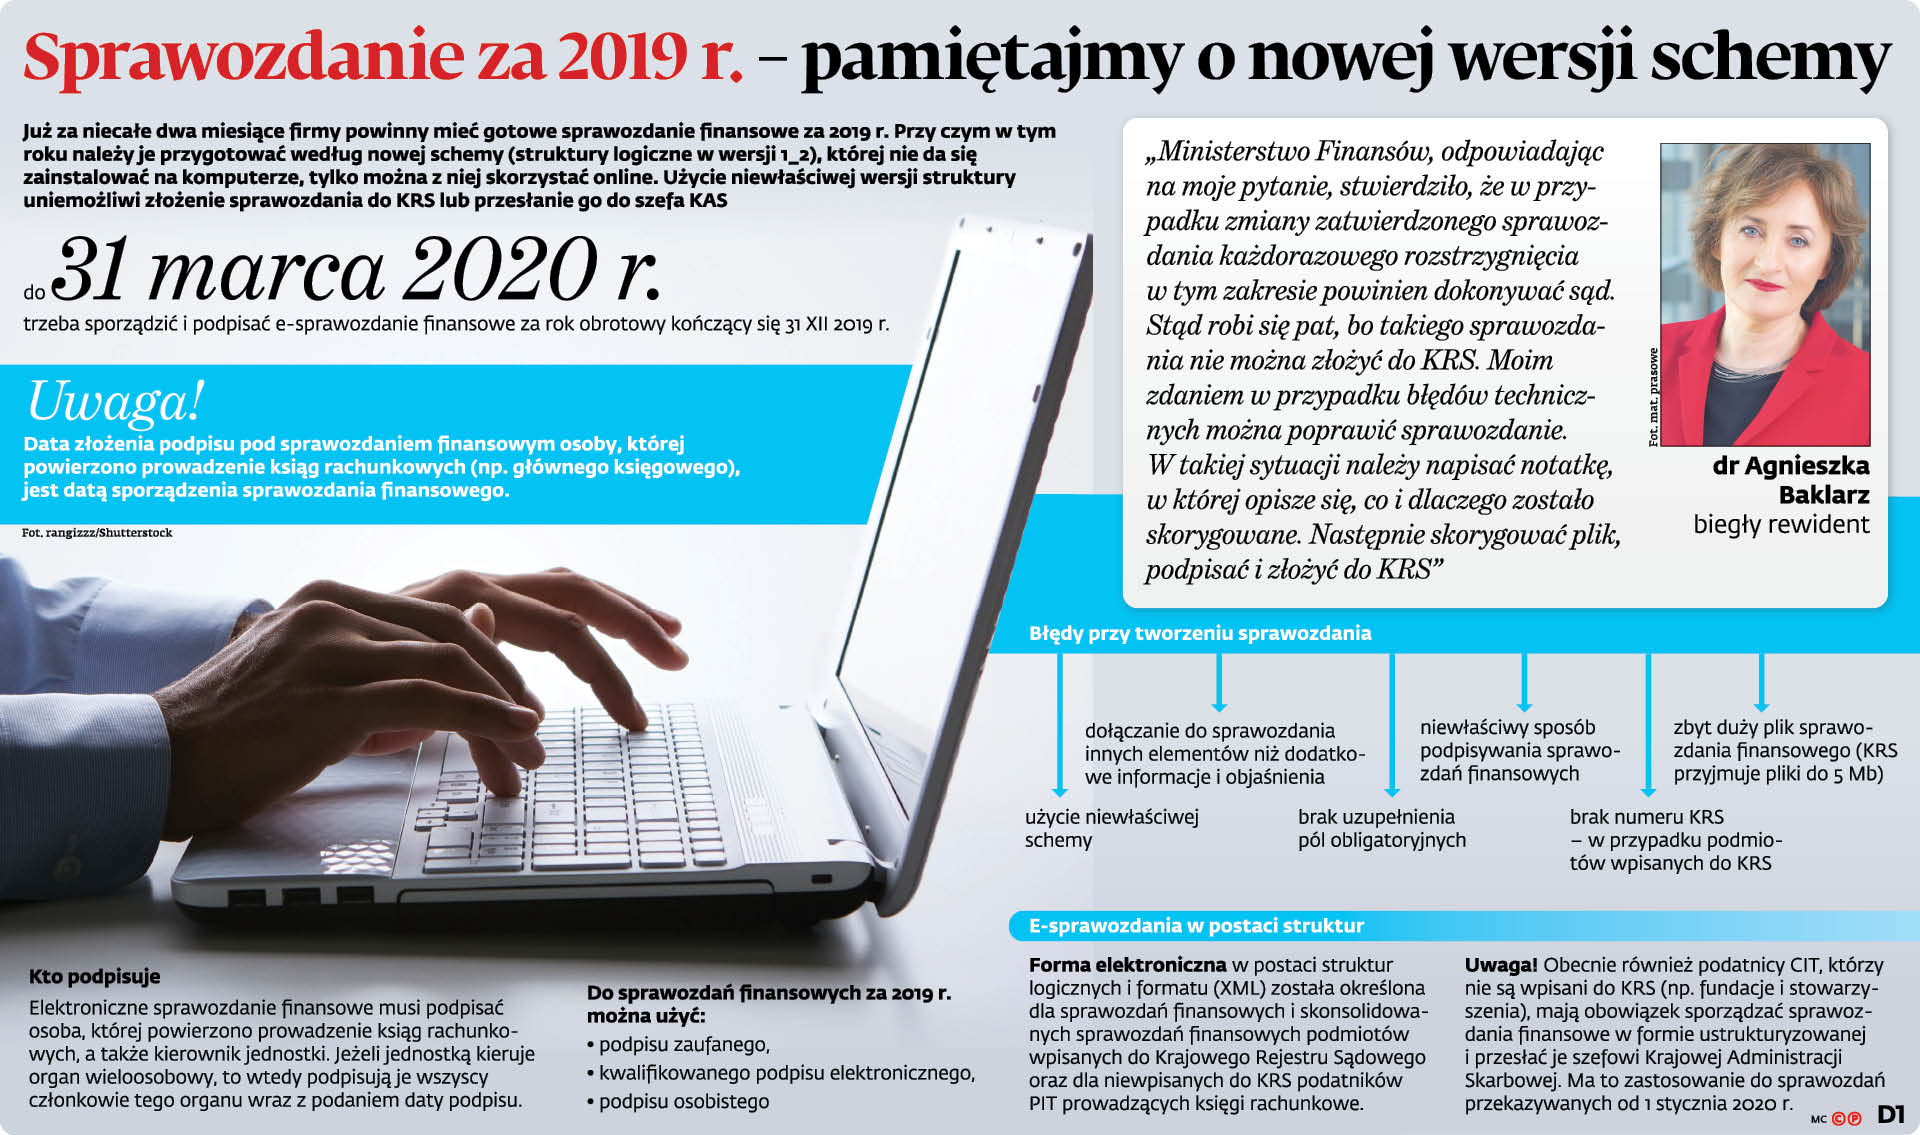 Sprawozdanie za 2019 r. - r pamiętajmy o nowej wersji z schemy -  GazetaPrawna.pl